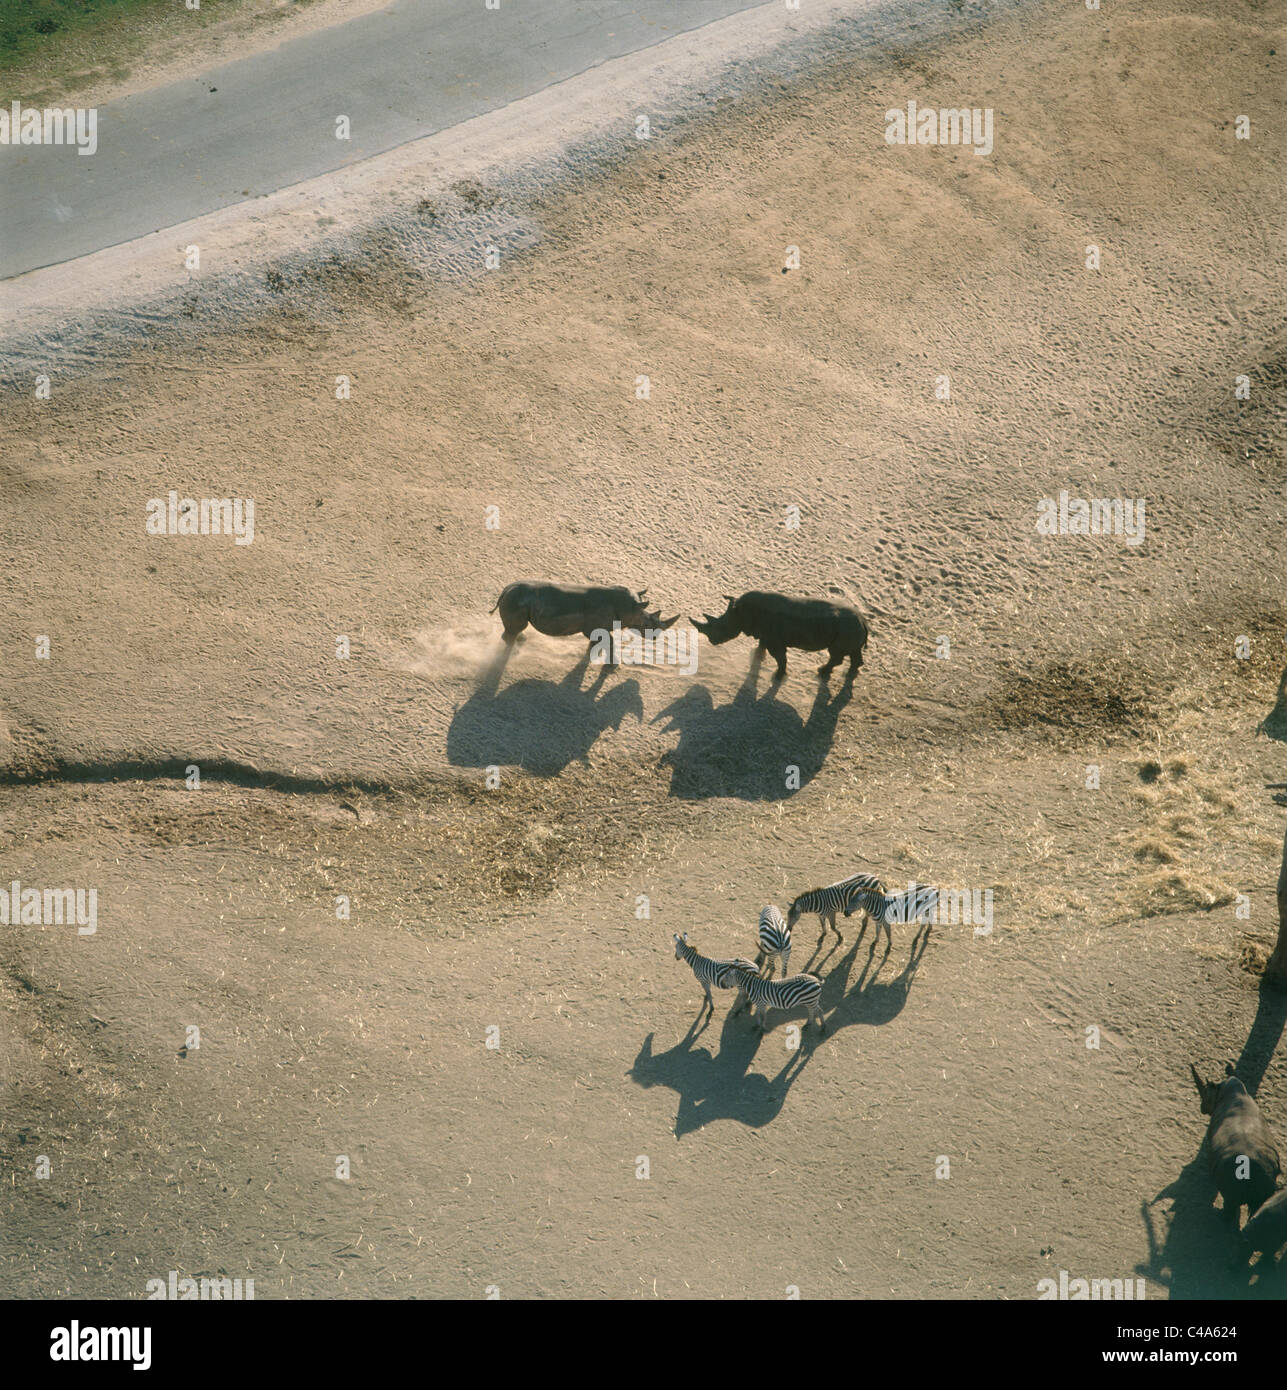 Fotografia aerea di rinoceronte e zebre al Safari Park di Ramat Gan Foto Stock